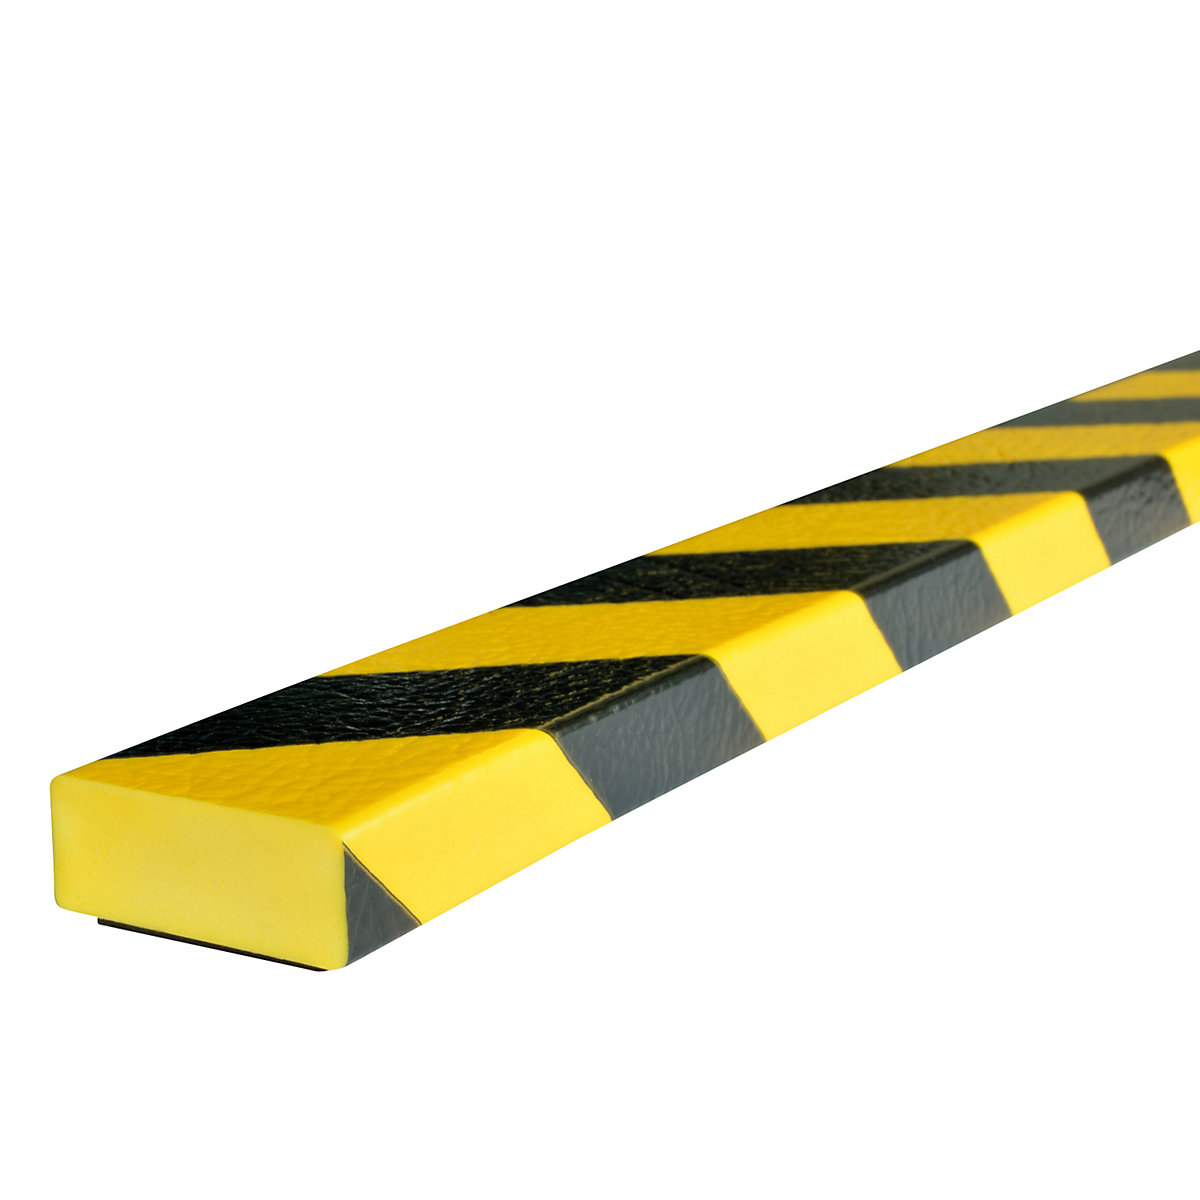 Zabezpieczenie powierzchni Knuffi® – SHG, typ D, szt. 1 m, magnes, żółty / czarny-23